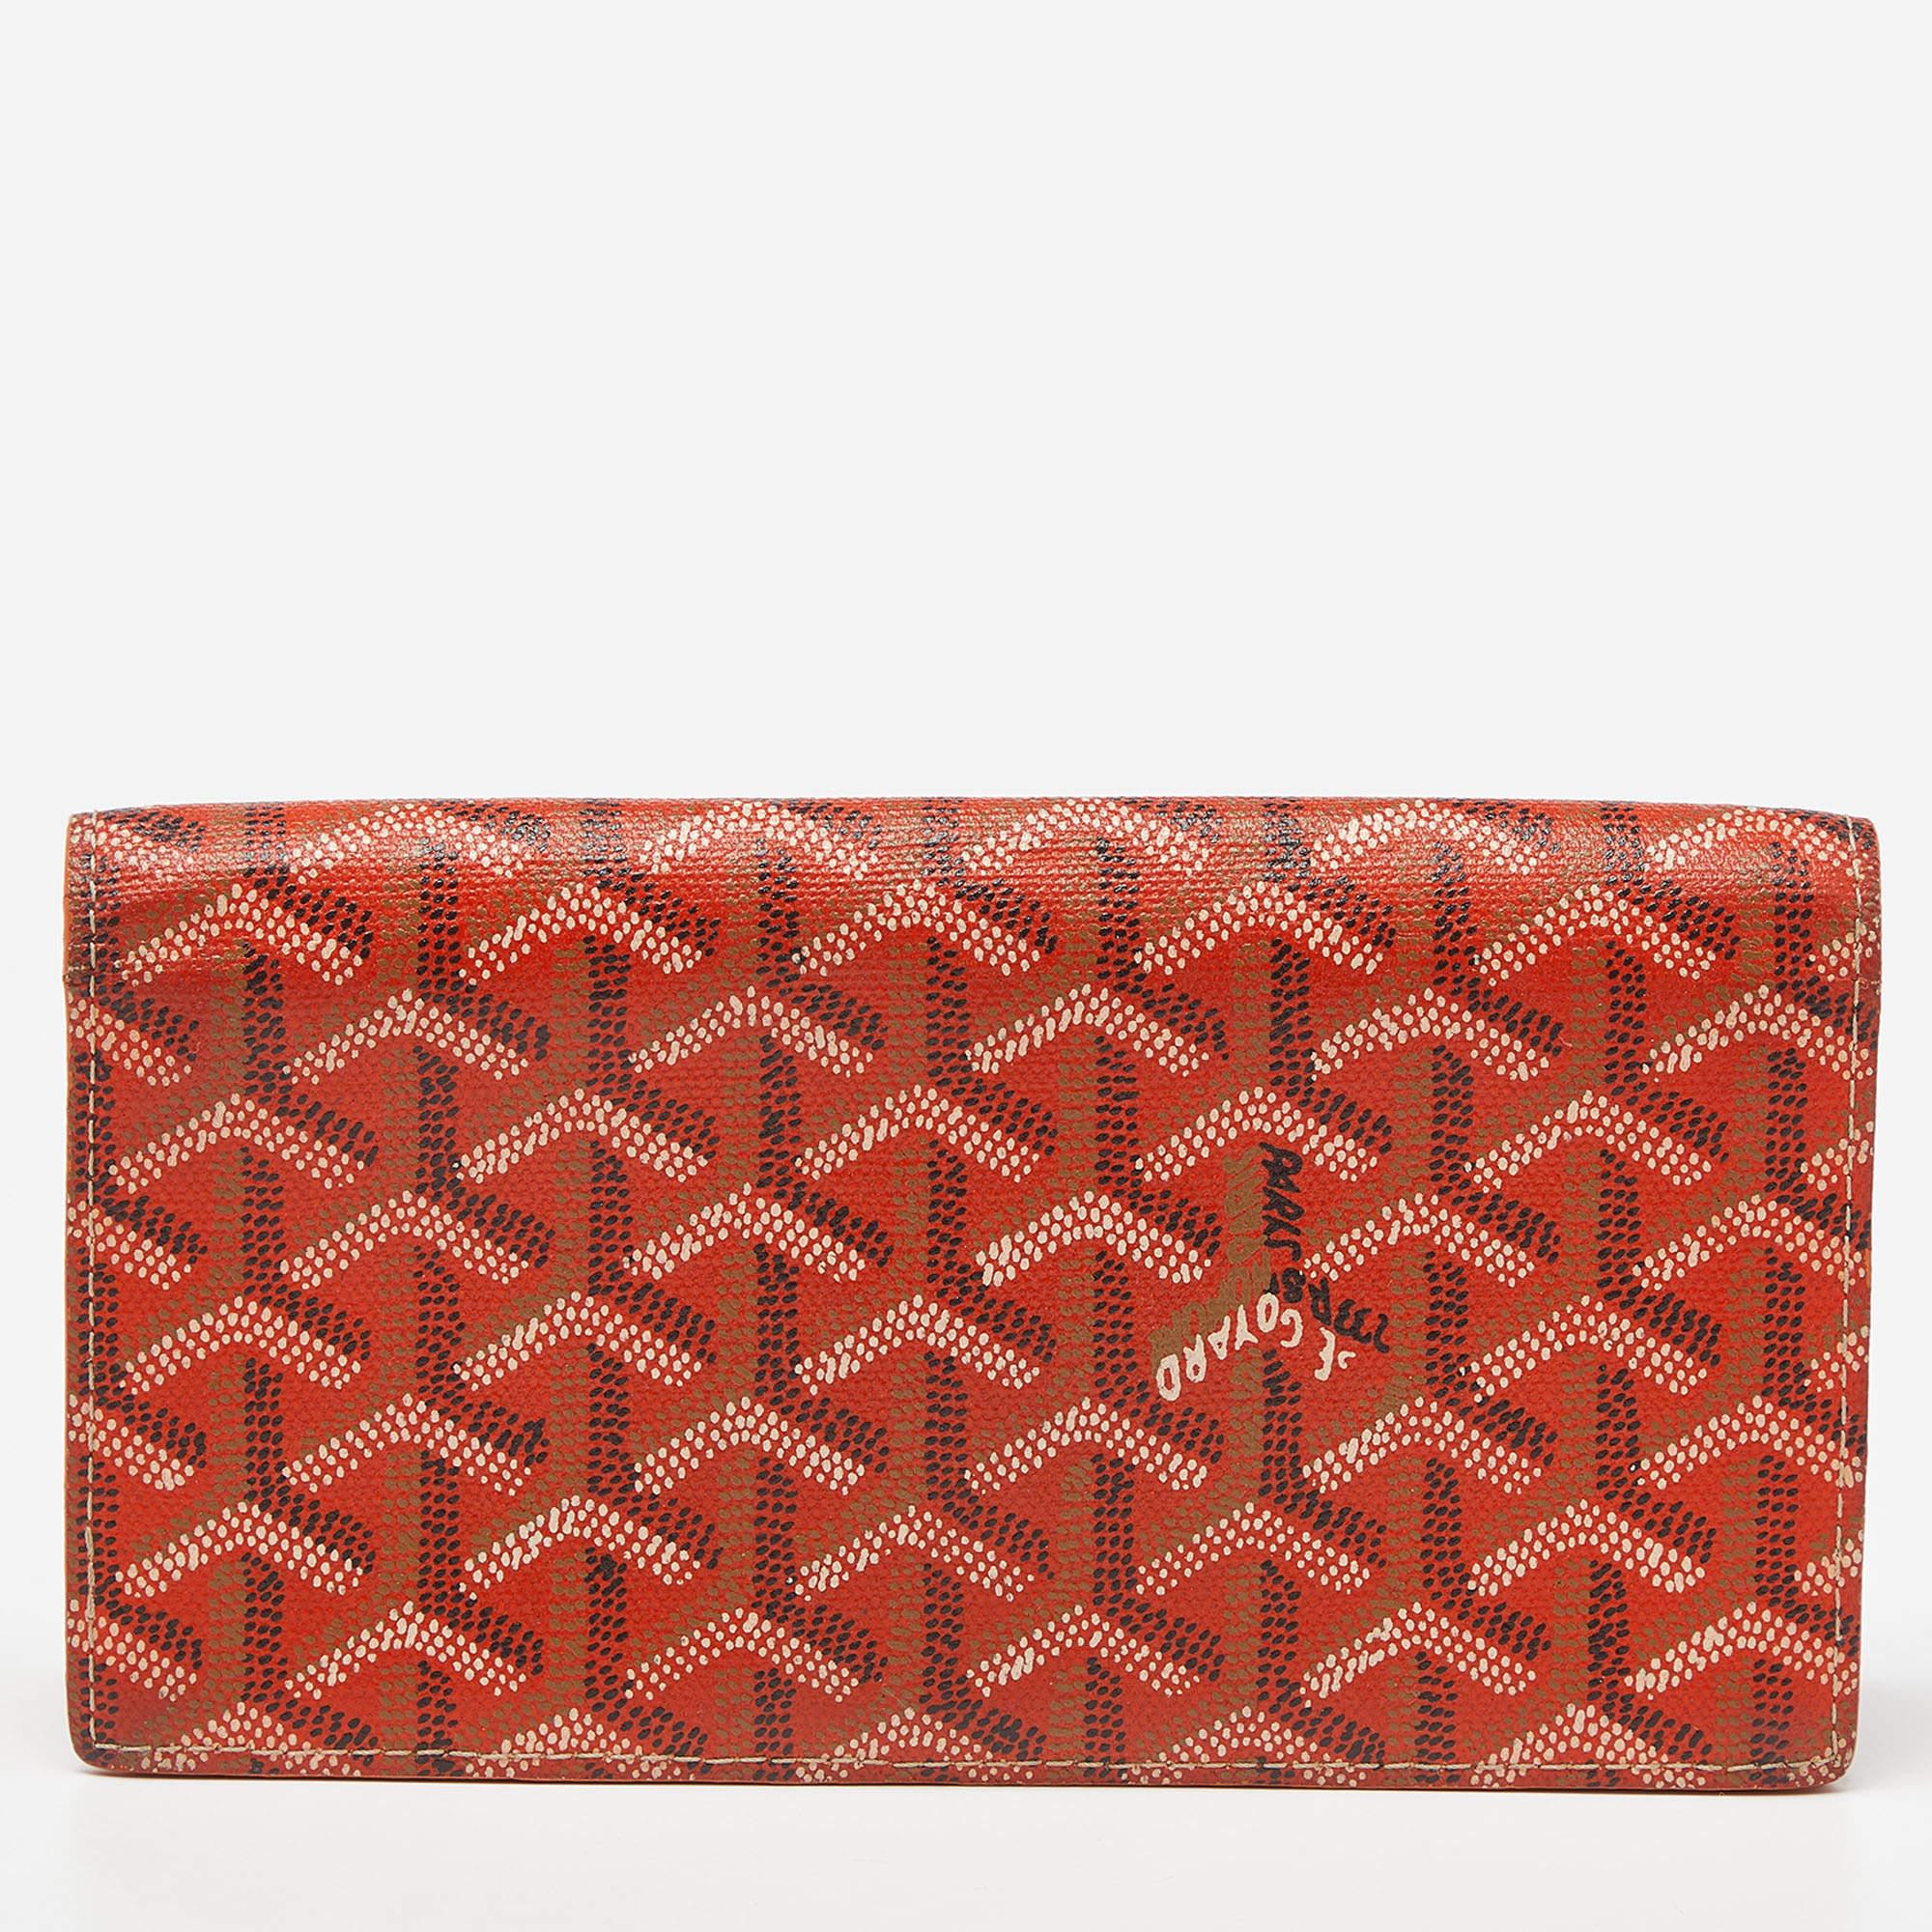 Cet authentique portefeuille Goyard pour femme apporte une touche de luxe et un style immense. Il est parfaitement conçu pour transporter vos cartes et votre argent.

